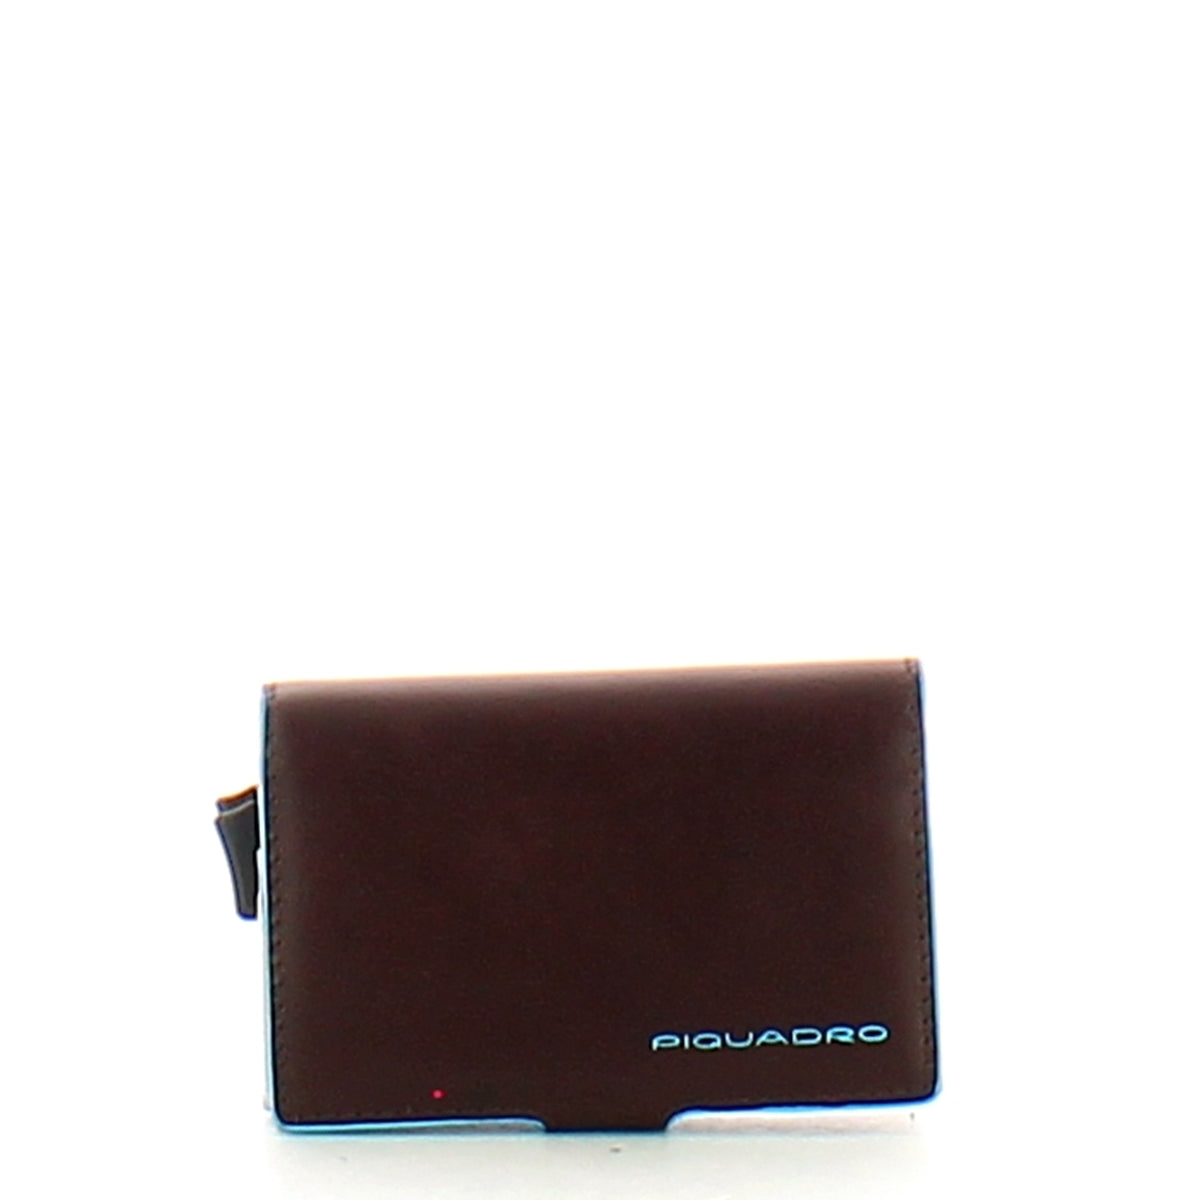 Piquadro -Porta carte di Credito Con Doppio滑動系統藍色正方形RFID -PP5472B2R -MOGANO